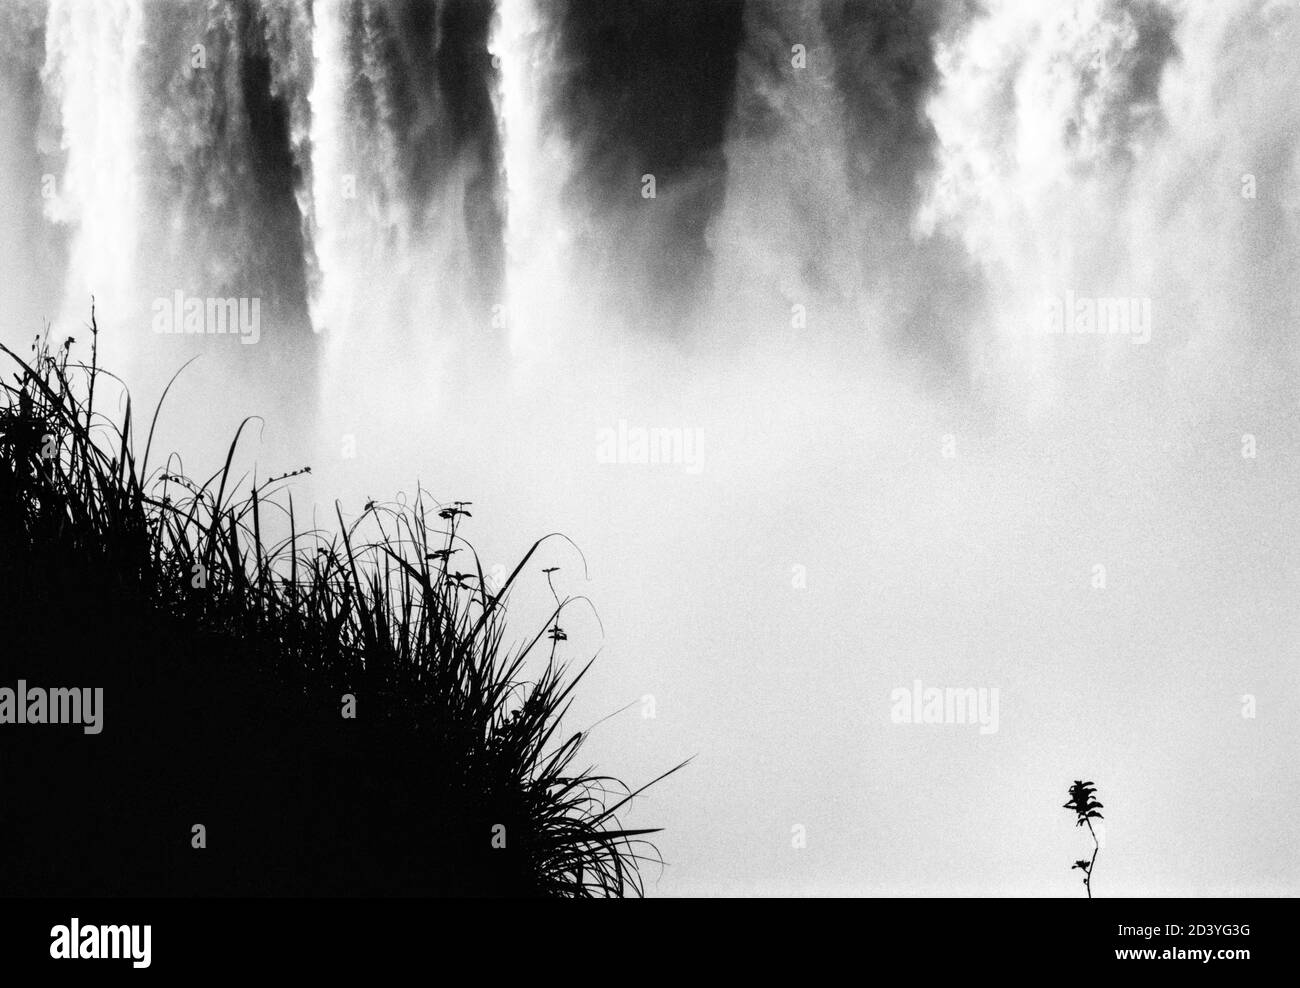 La lame solitaire d'herbe et de brousse se dresse contre une imposante cascade à Cataratas de Iguazu, à la frontière entre l'Argentine, le Brésil et le Paraguay Banque D'Images